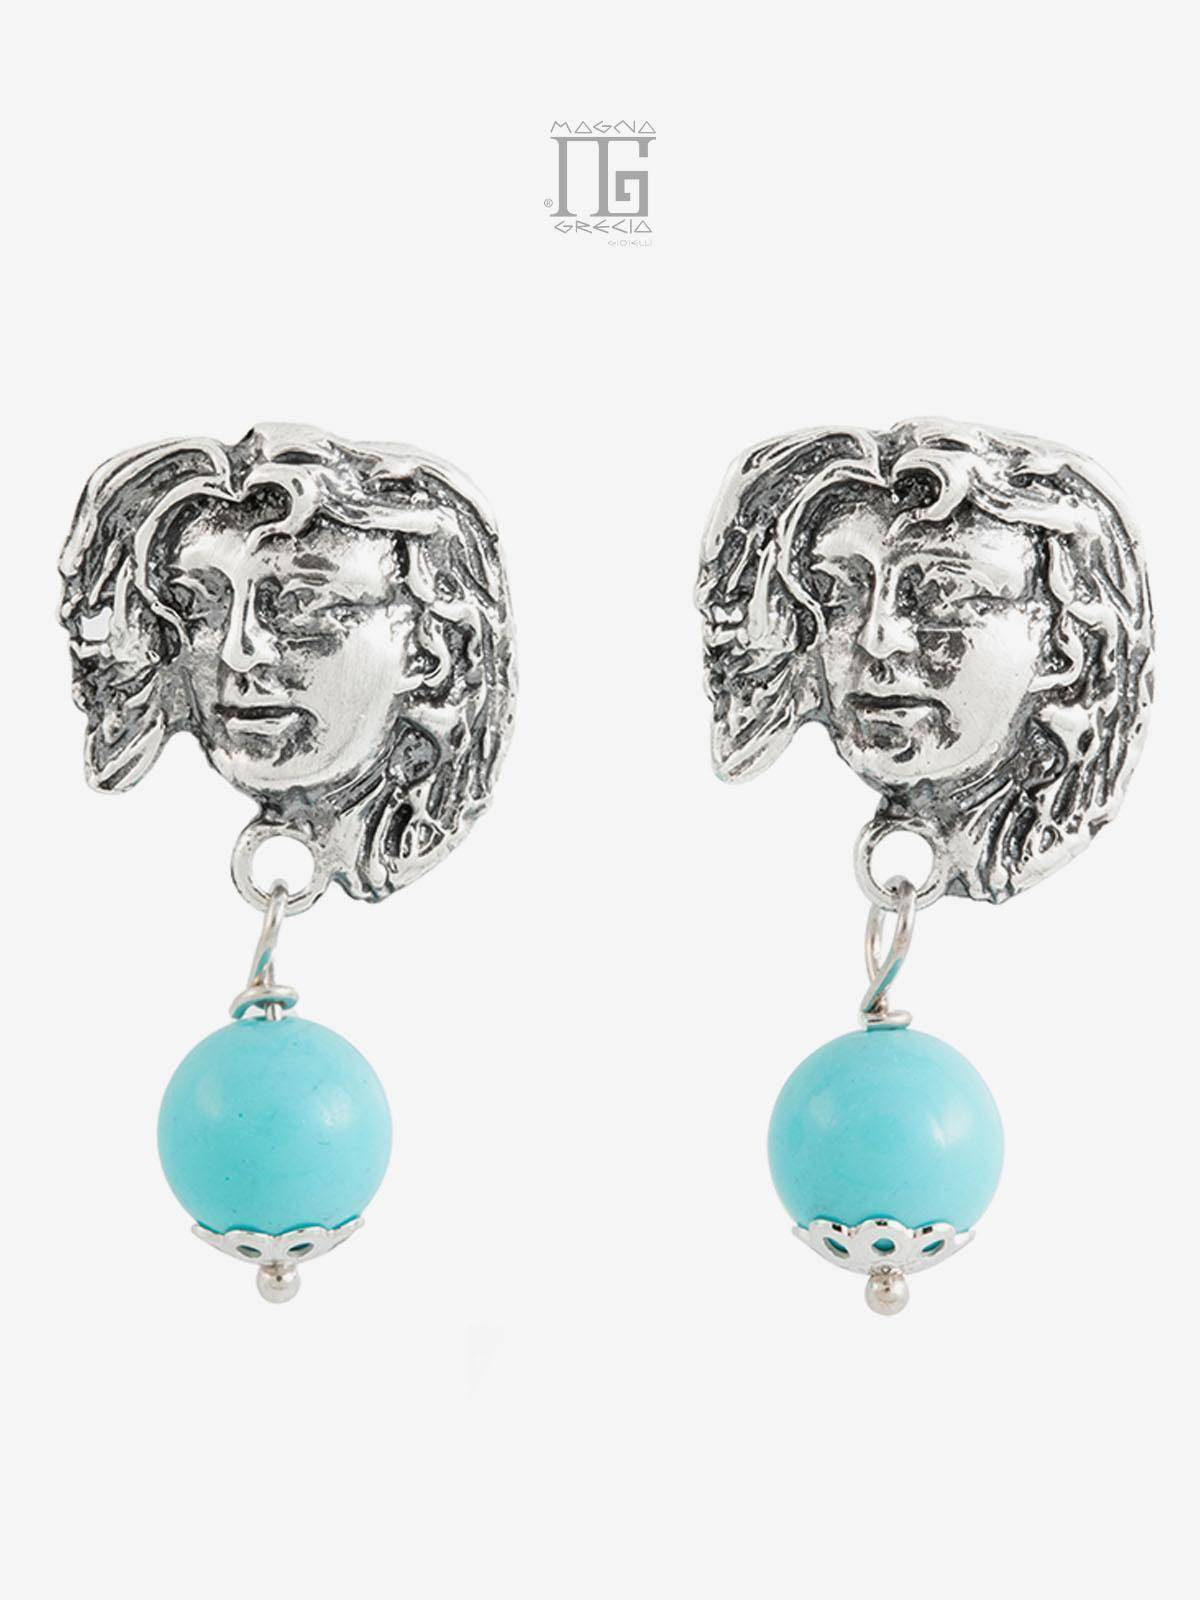 Pendientes “Love” de plata que representan el rostro de la diosa Venus y piedra de pasta turquesa Cod. MGK 3852 V-1.